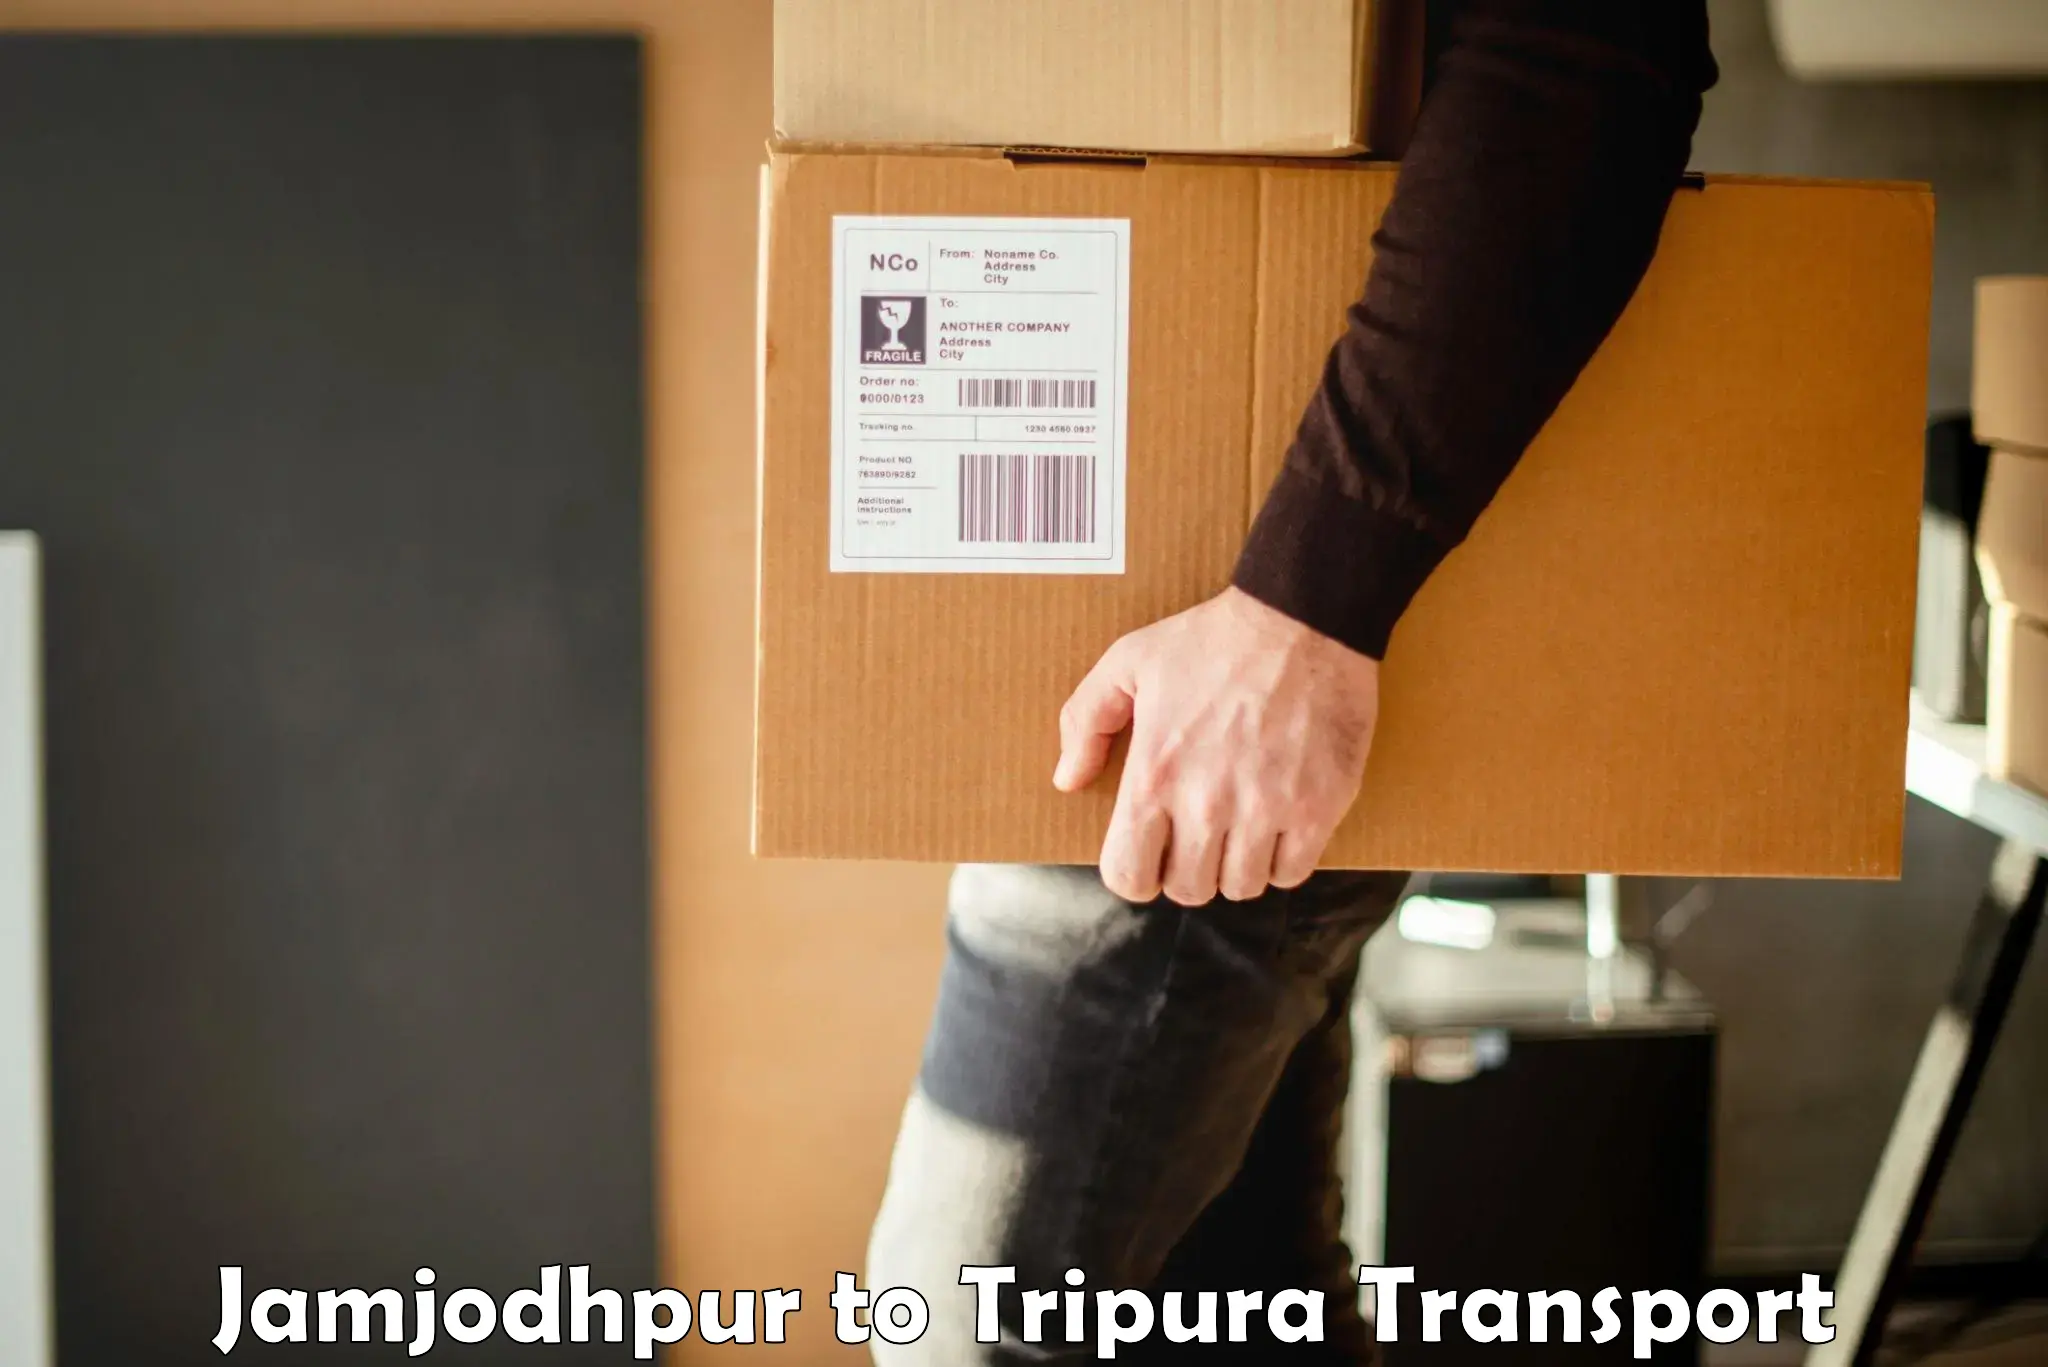 Daily transport service Jamjodhpur to Sonamura